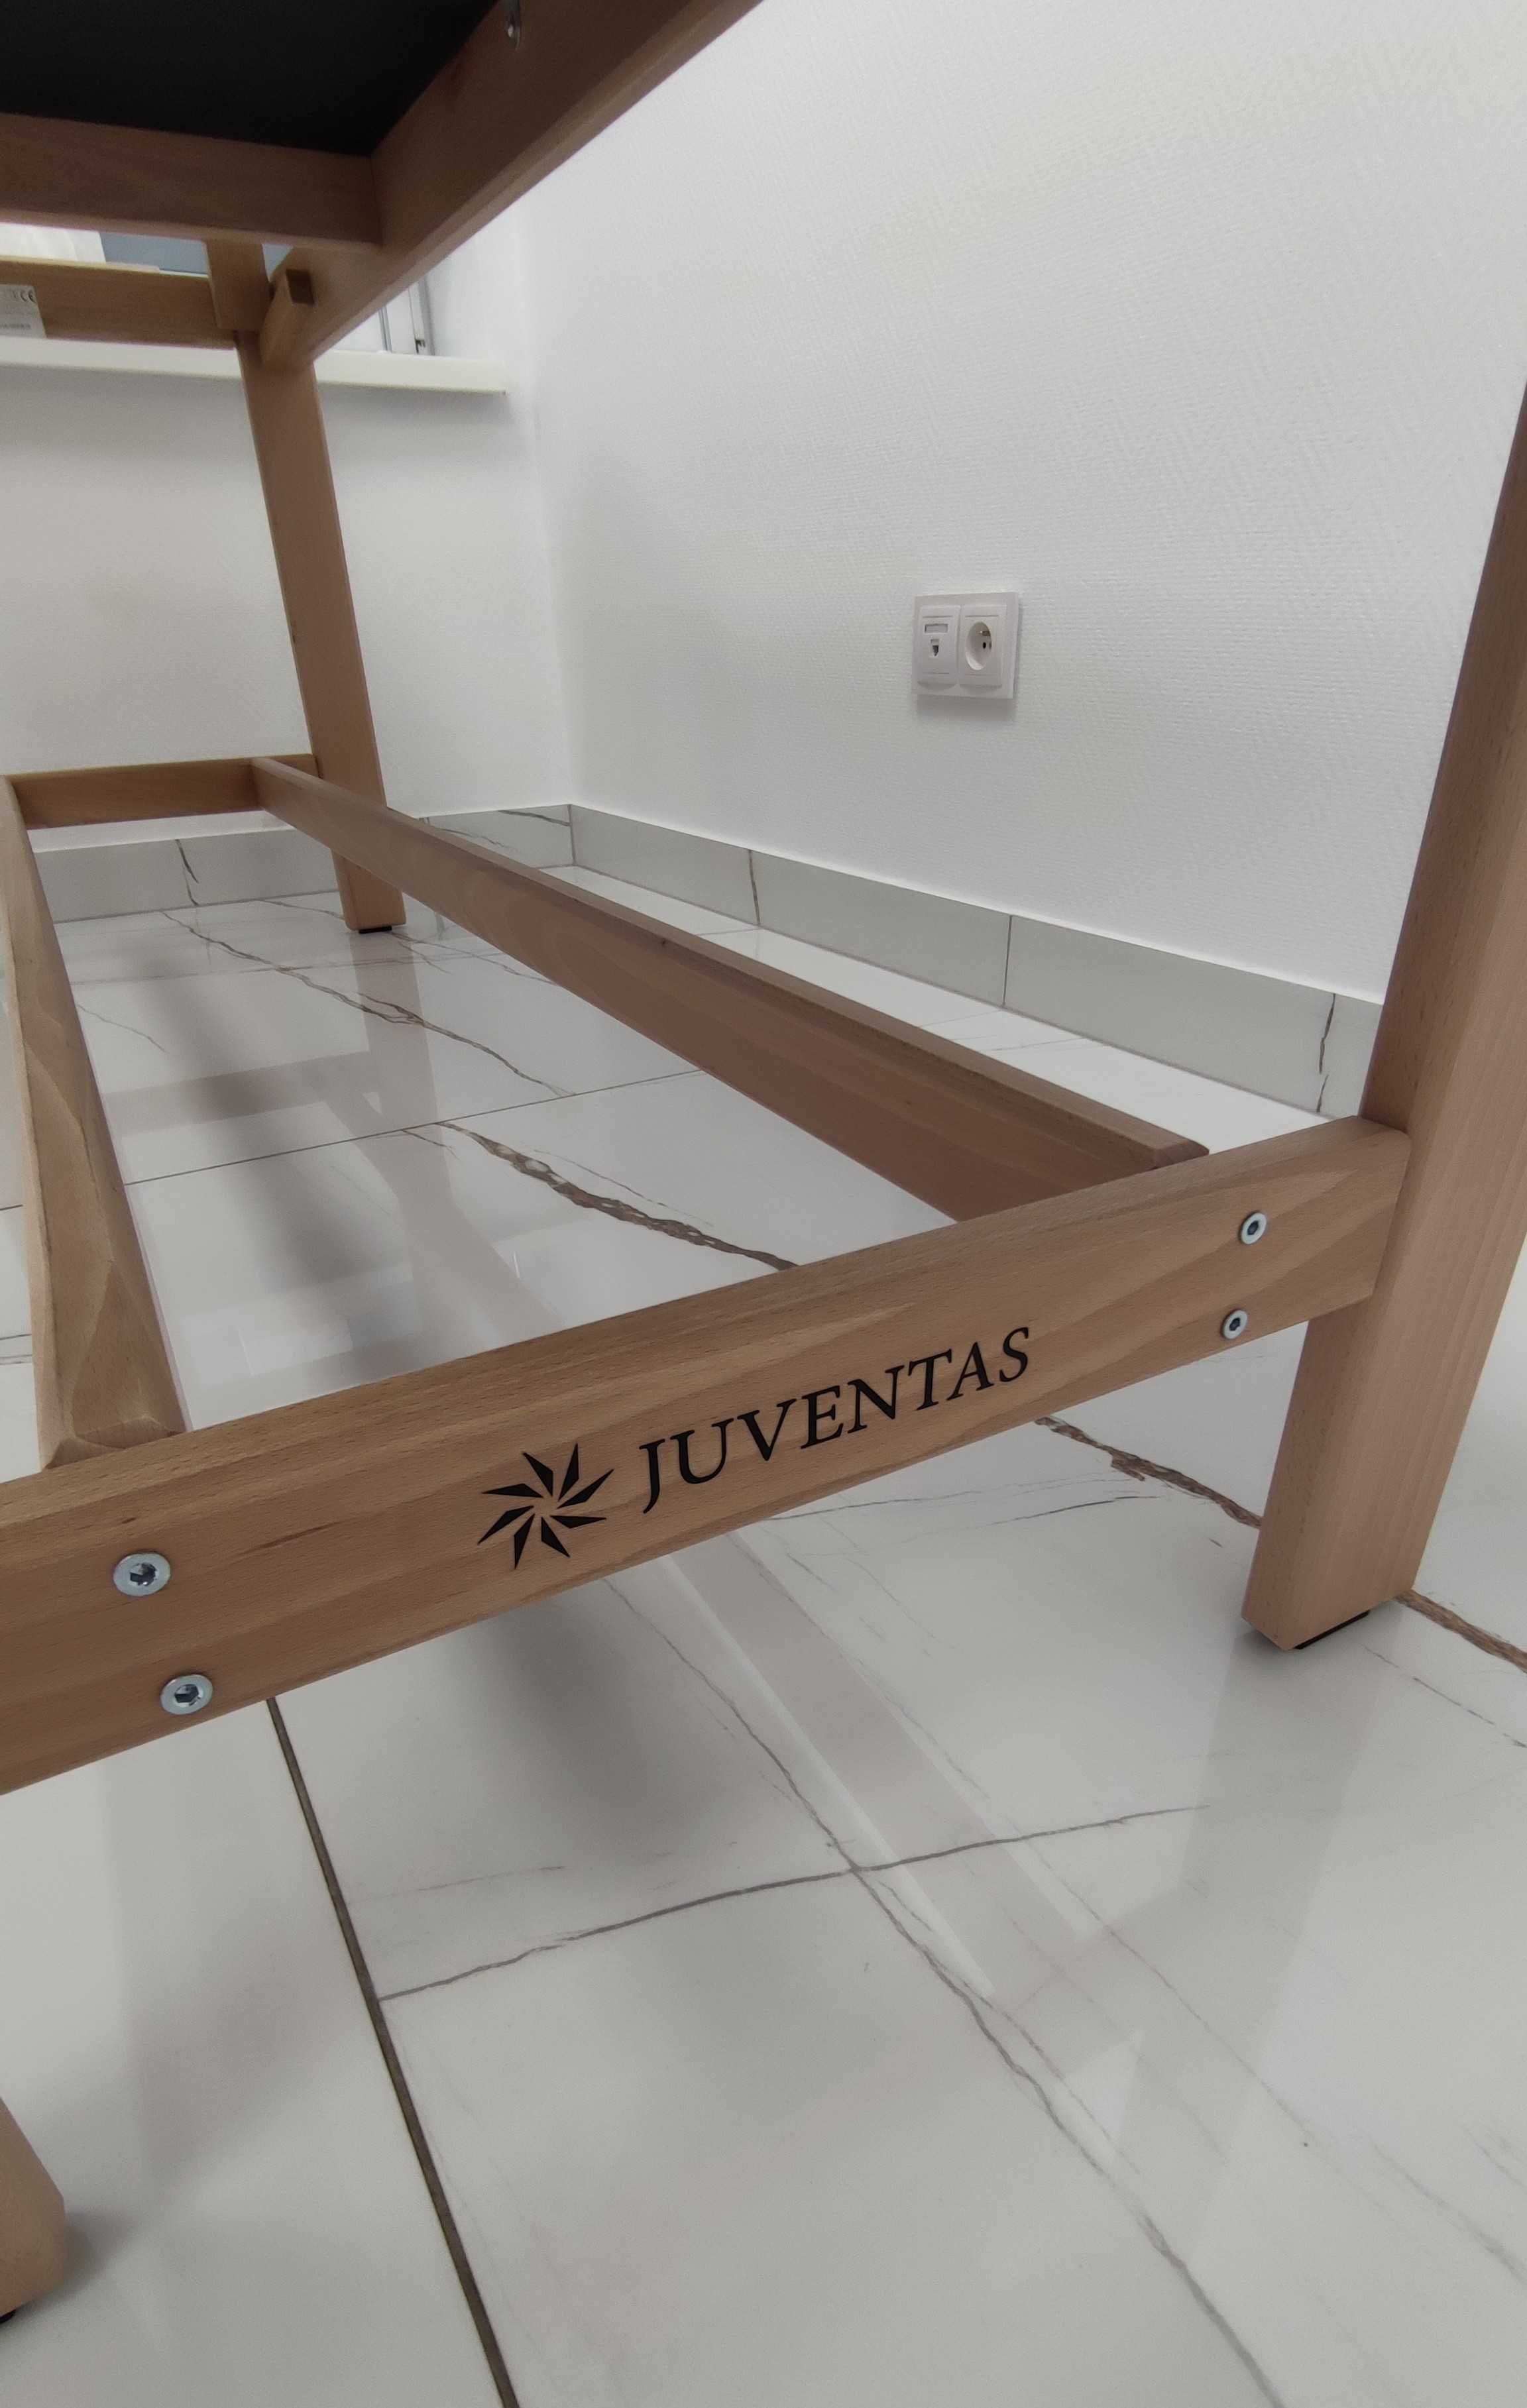 Stacjonarny stół rehabilitacyjny Relax z firmy Juventas